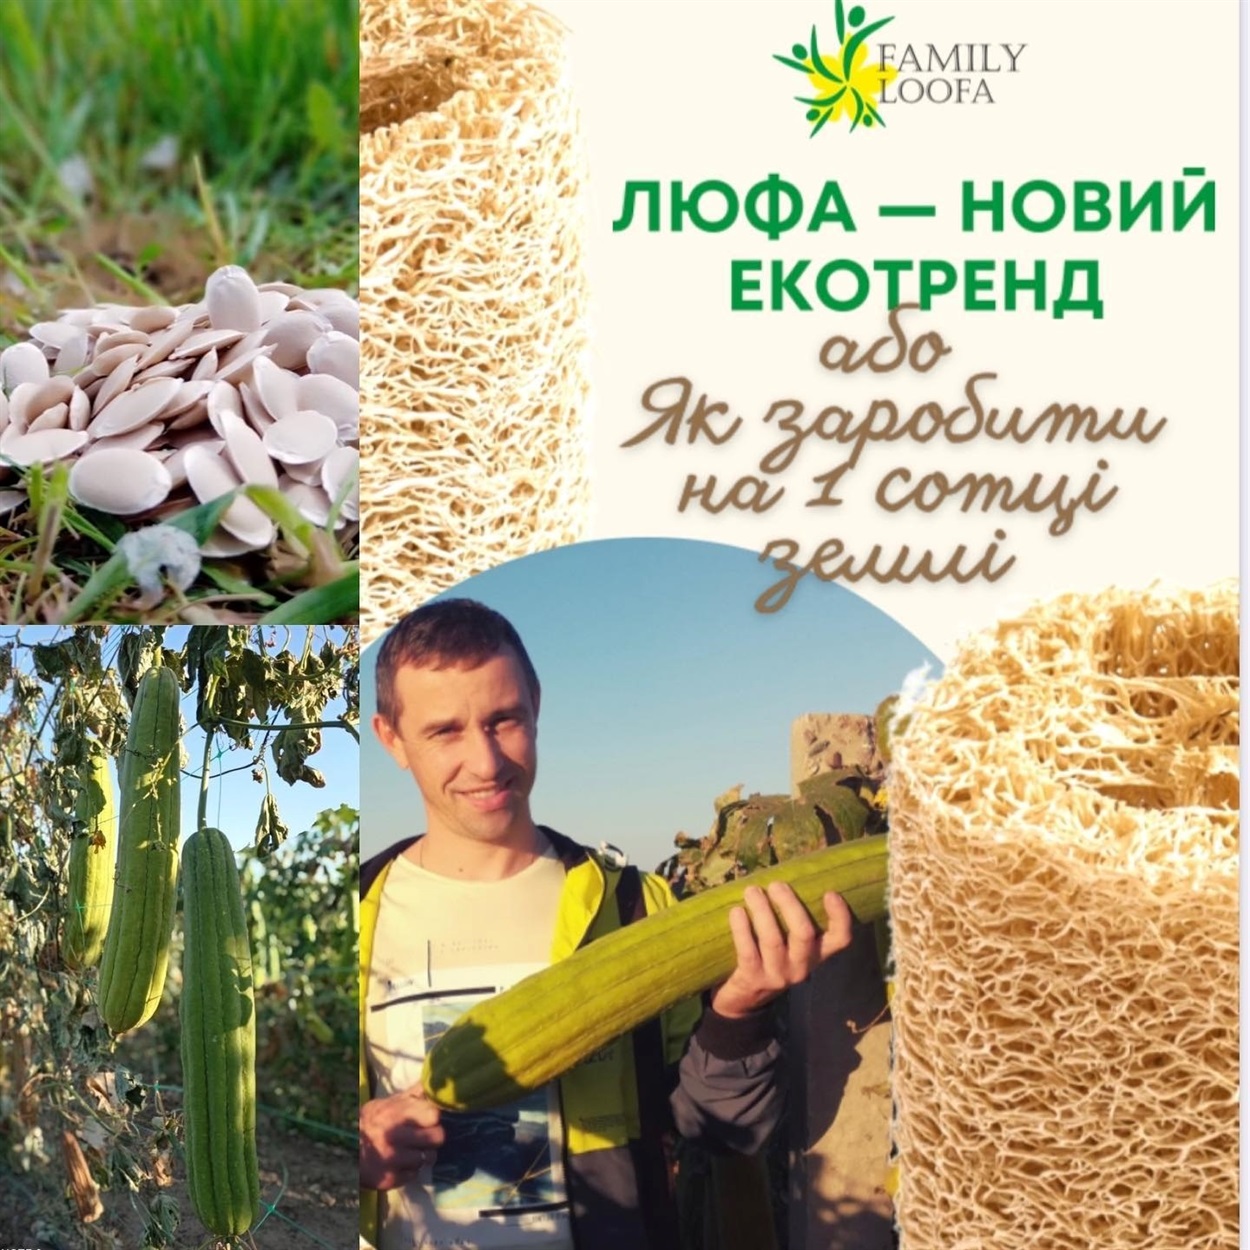 Електронний посібник з вирощування люфи від родини Жданових